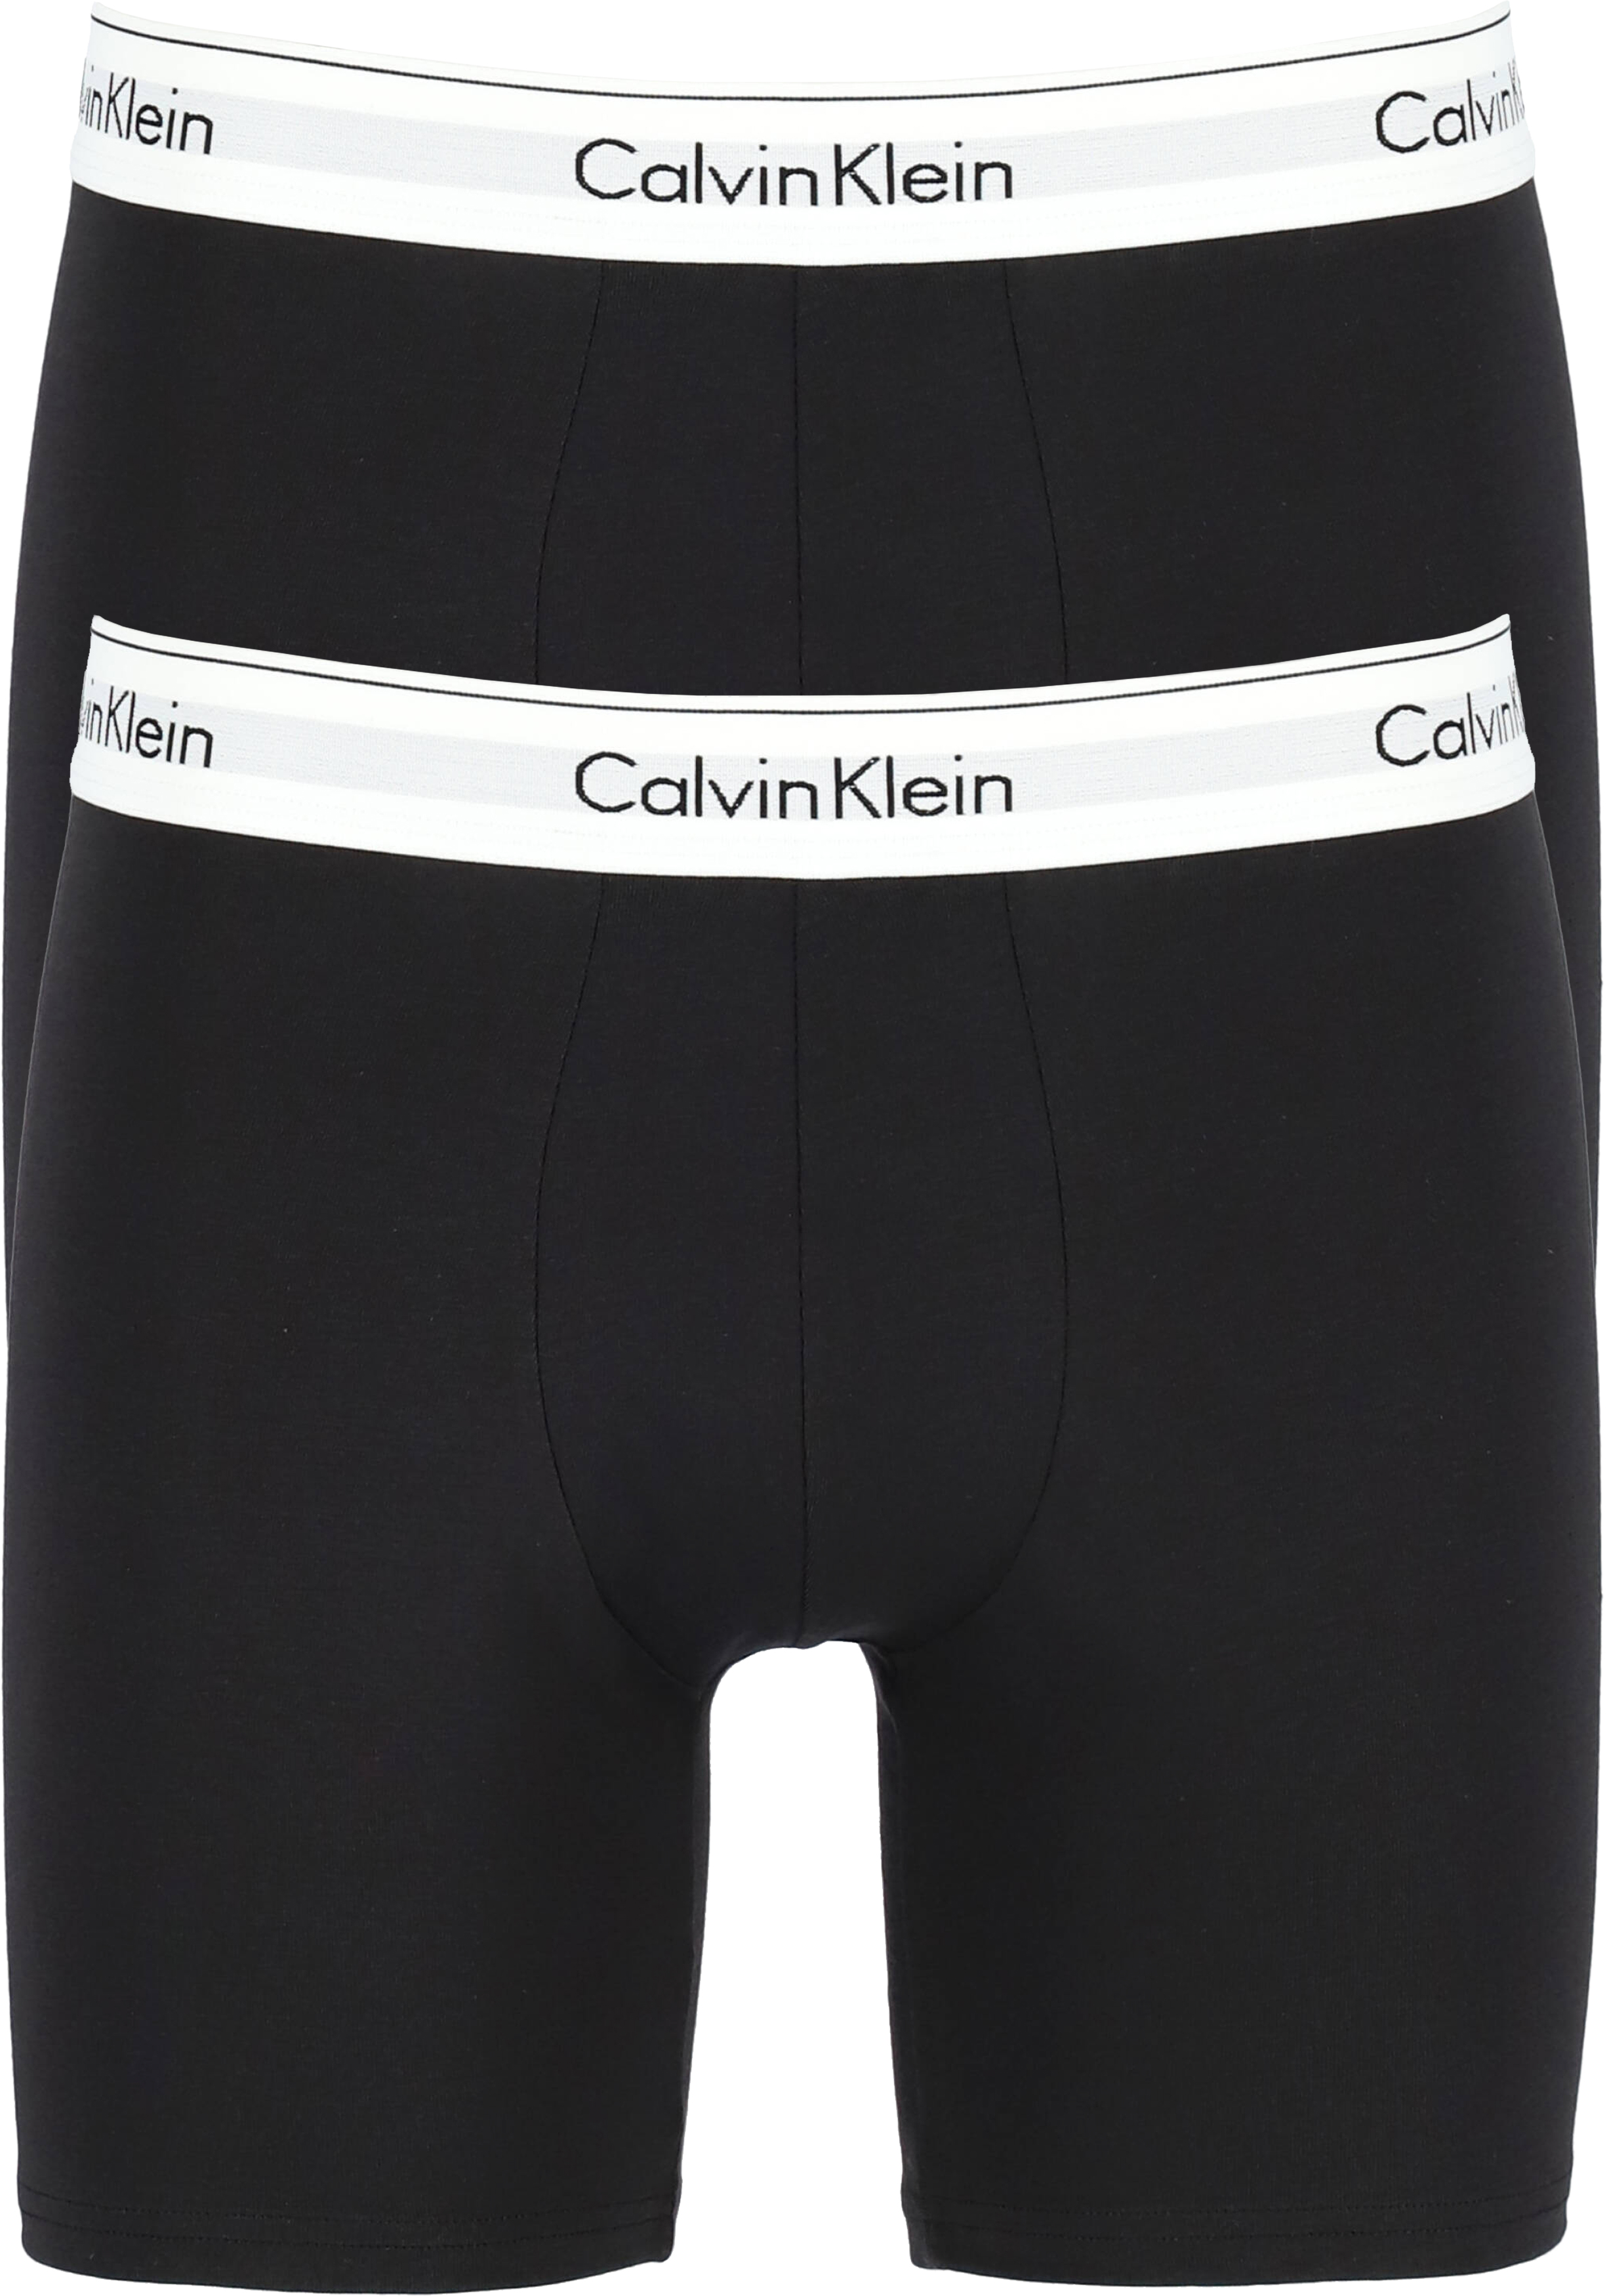 Vochtig Vervelen sectie Calvin Klein Modern Cotton boxer brief (2-pack), heren boxers lang, zwart -  Shop de nieuwste voorjaarsmode